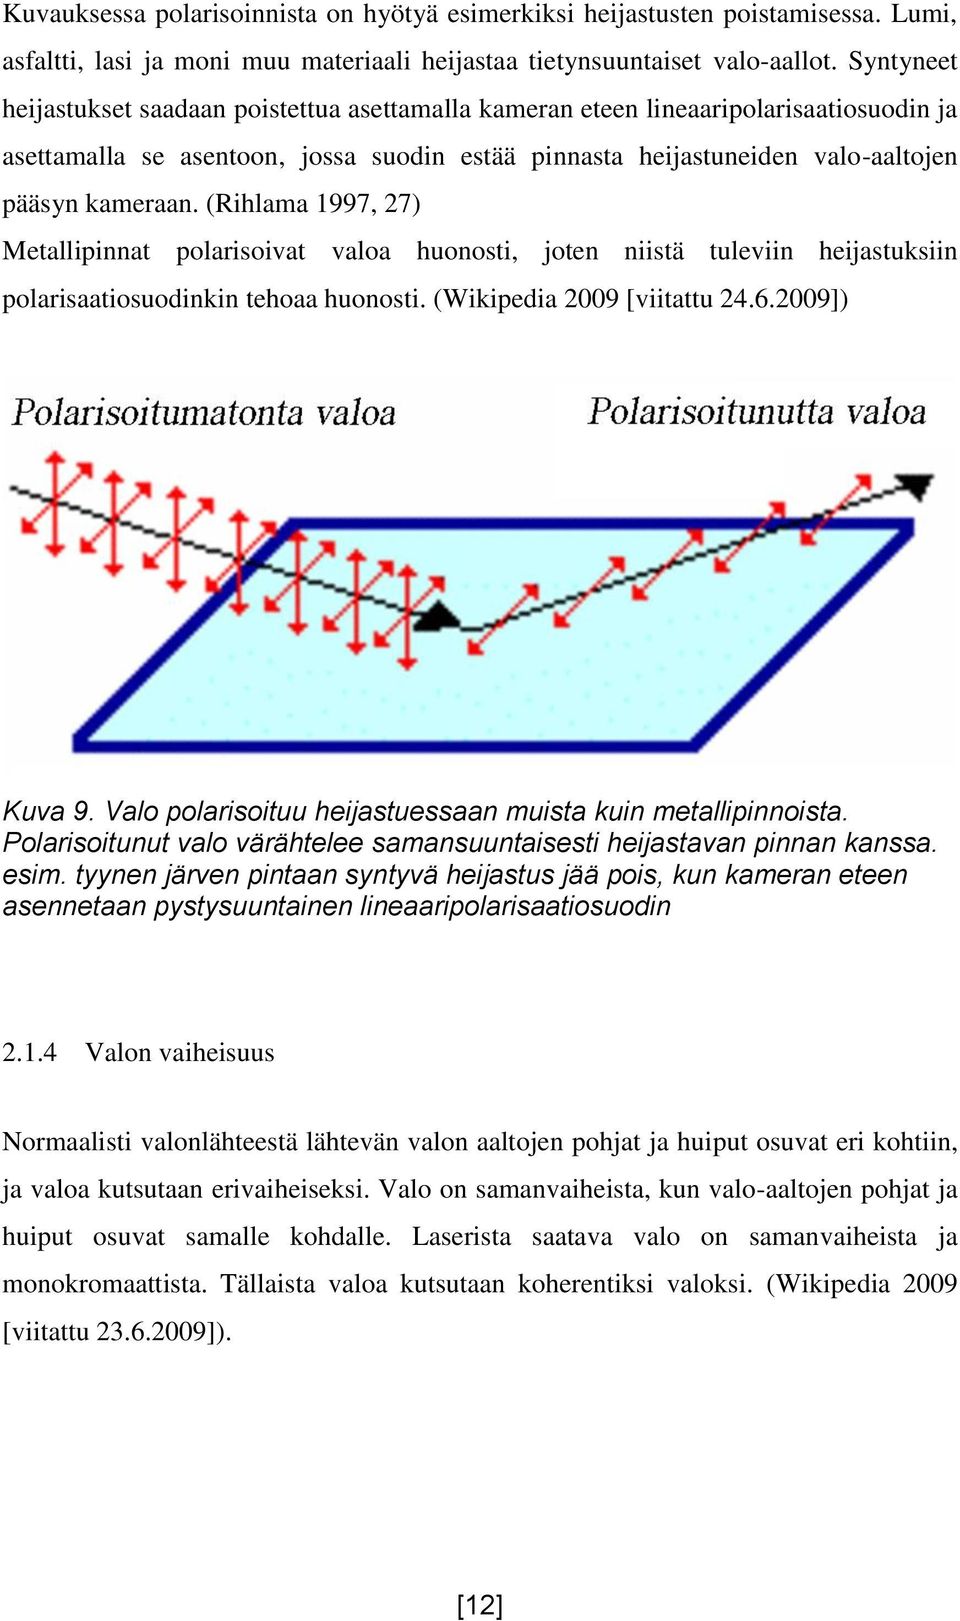 (Rihlama 1997, 27) Metallipinnat polarisoivat valoa huonosti, joten niistä tuleviin heijastuksiin polarisaatiosuodinkin tehoaa huonosti. (Wikipedia 2009 [viitattu 24.6.2009]) Kuva 9.